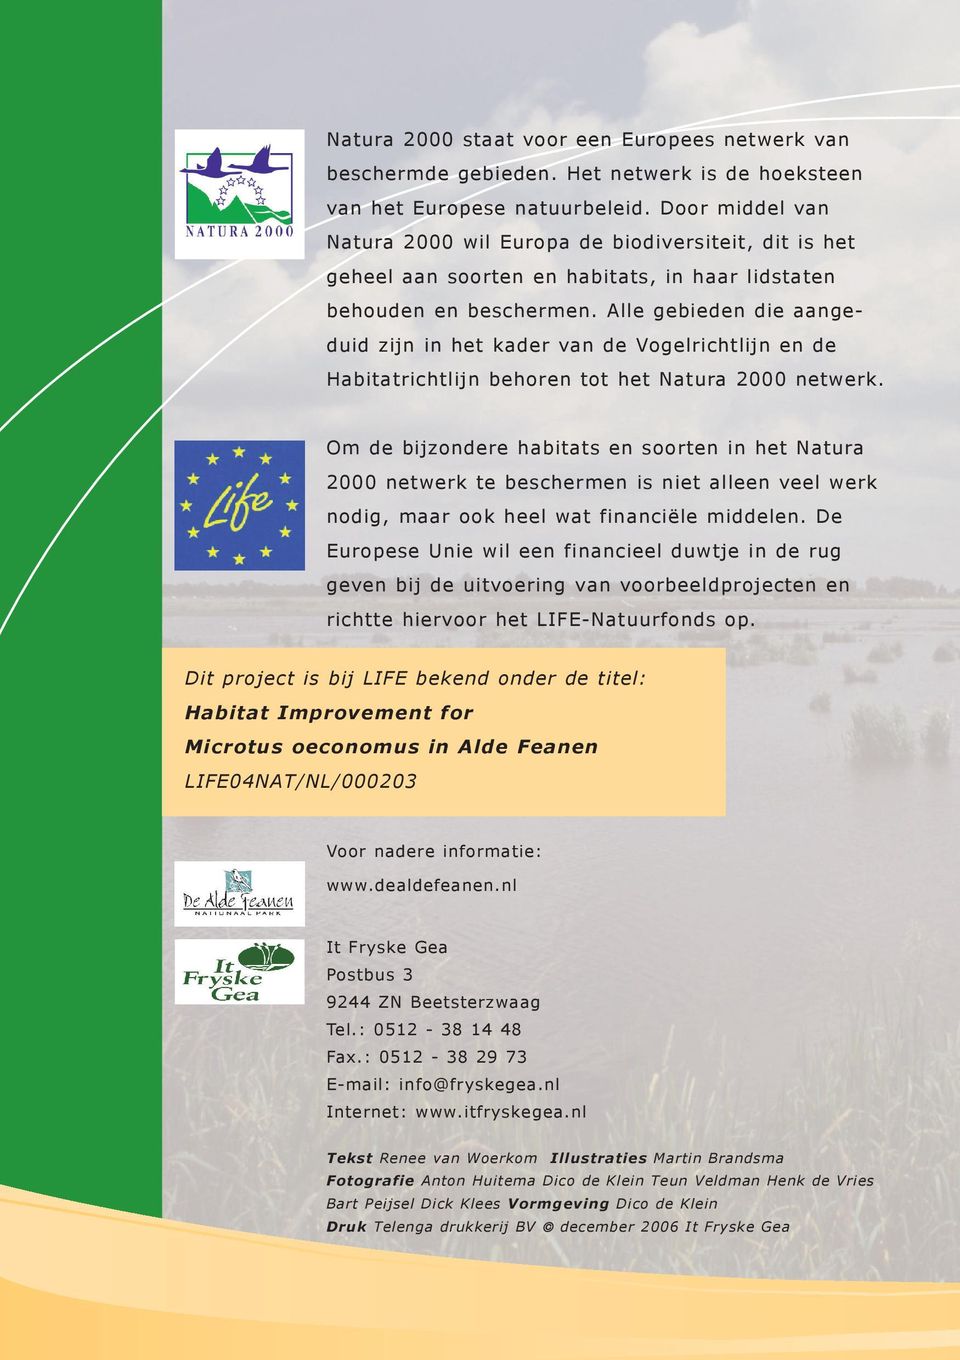 Alle gebieden die aangeduid zijn in het kader van de Vogelrichtlijn en de Habitatrichtlijn behoren tot het Natura 2000 netwerk.